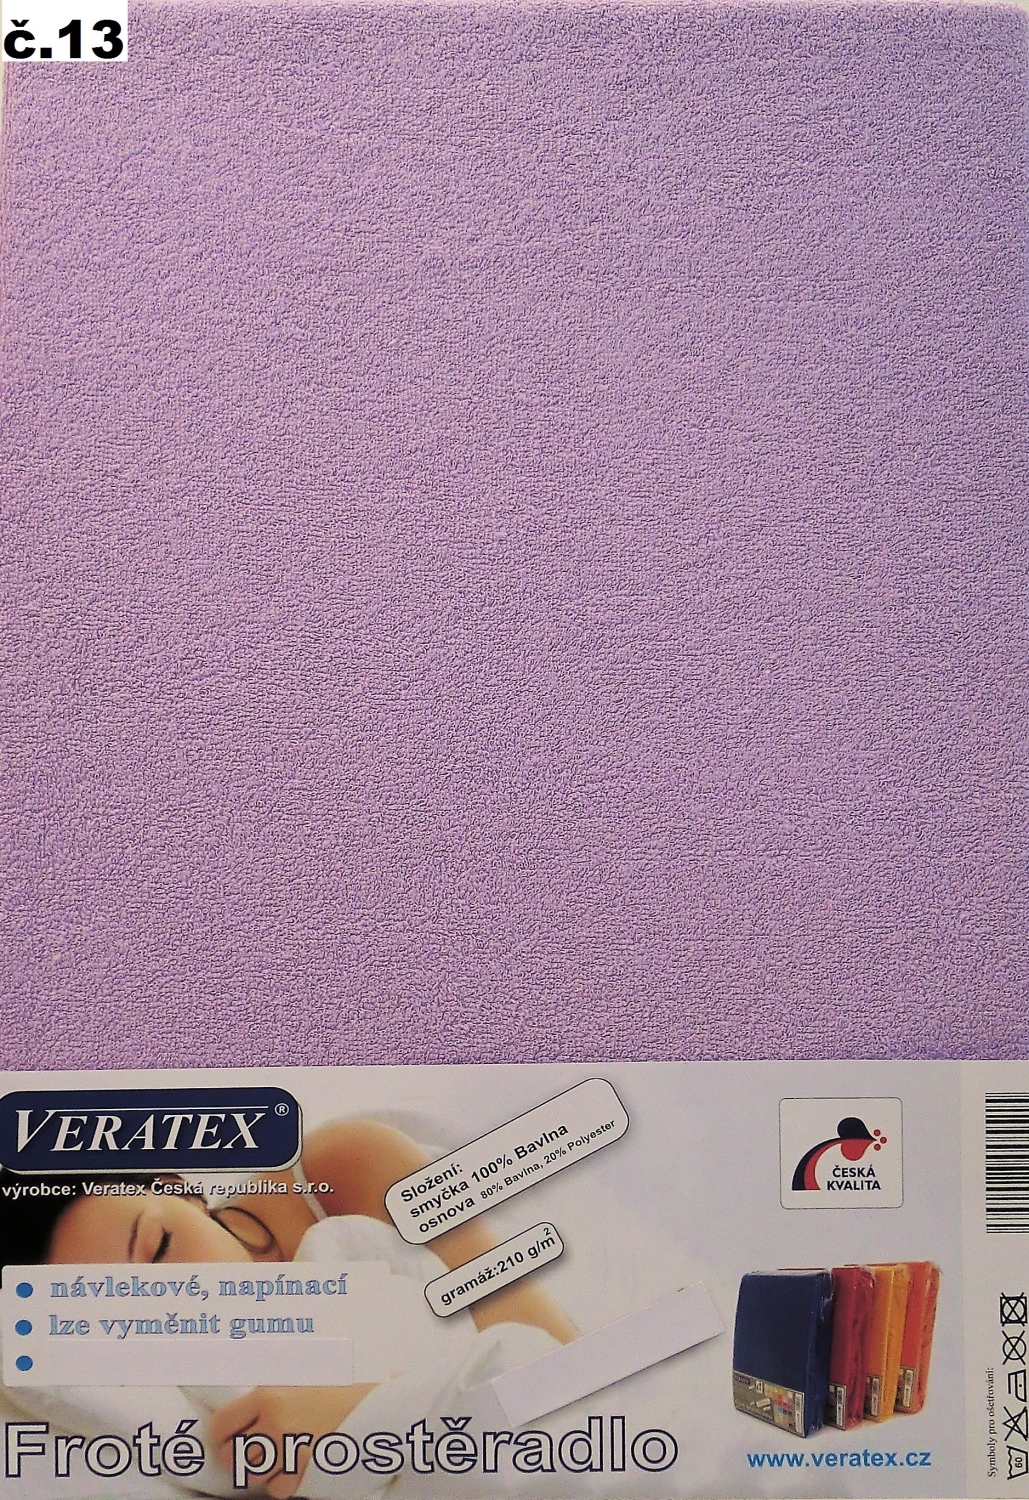 Veratex Froté prostěradlo 160x200/16 cm (č.13-fialková) 160 x 200 cm